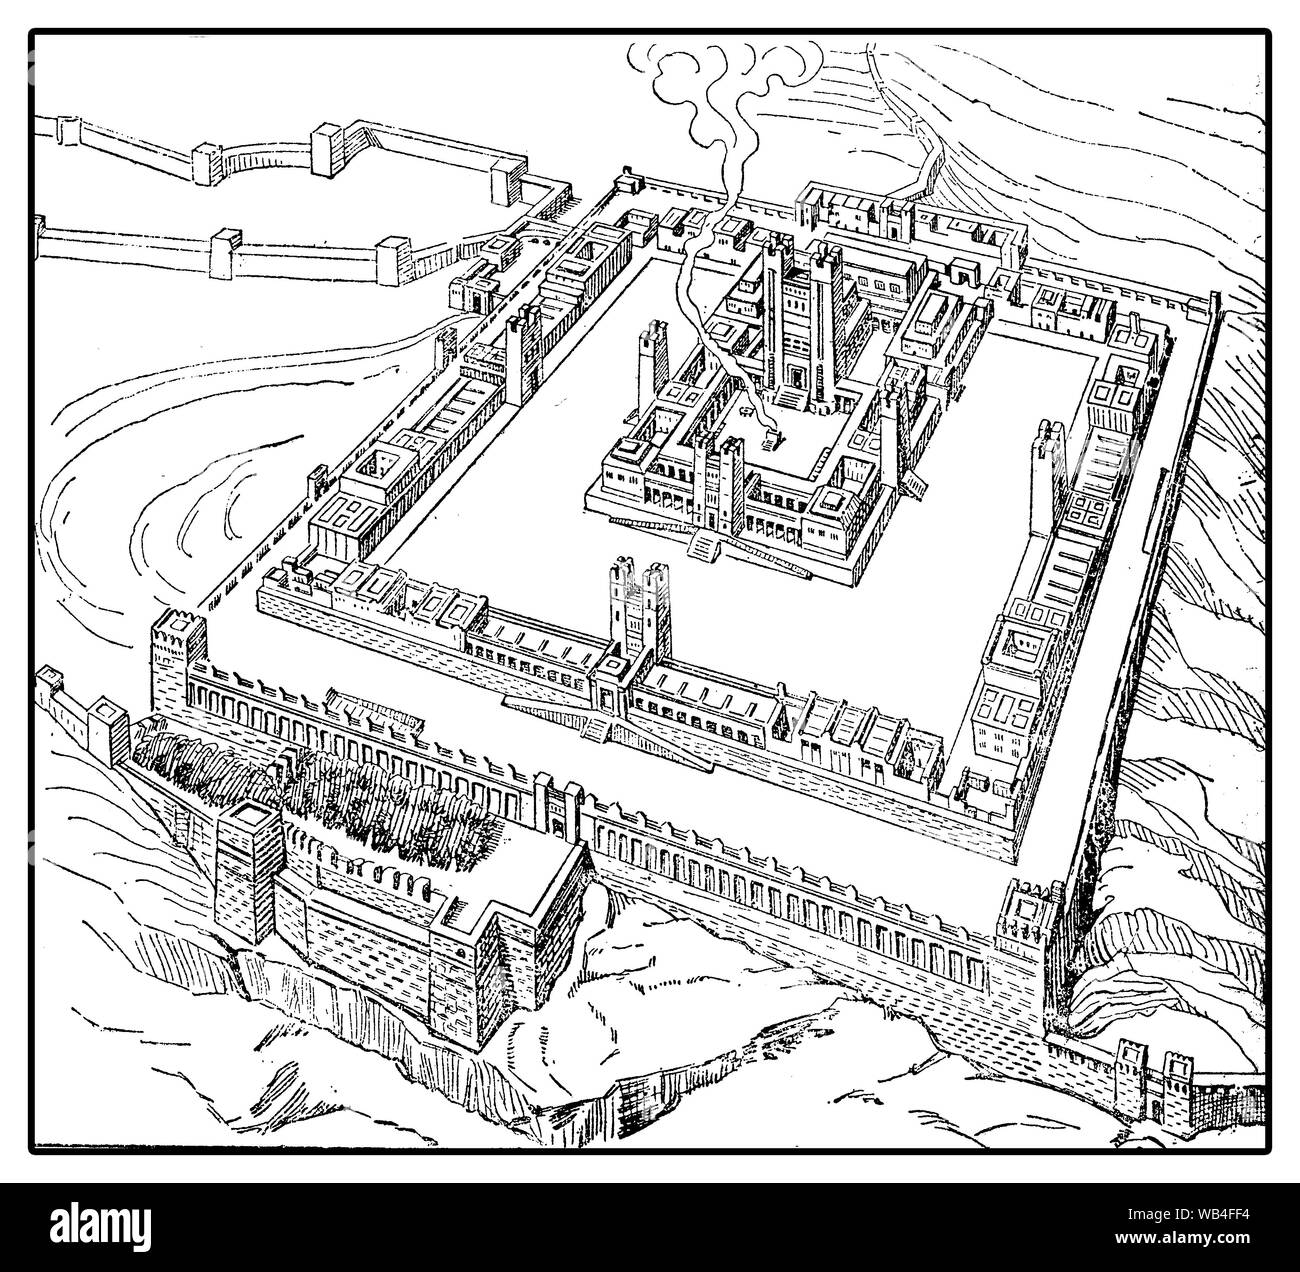 La ricostruzione del tempio di Gerusalemme a Erode il Grande vecchio volte:L'edificio su una spianata alta circondata da mura Foto Stock